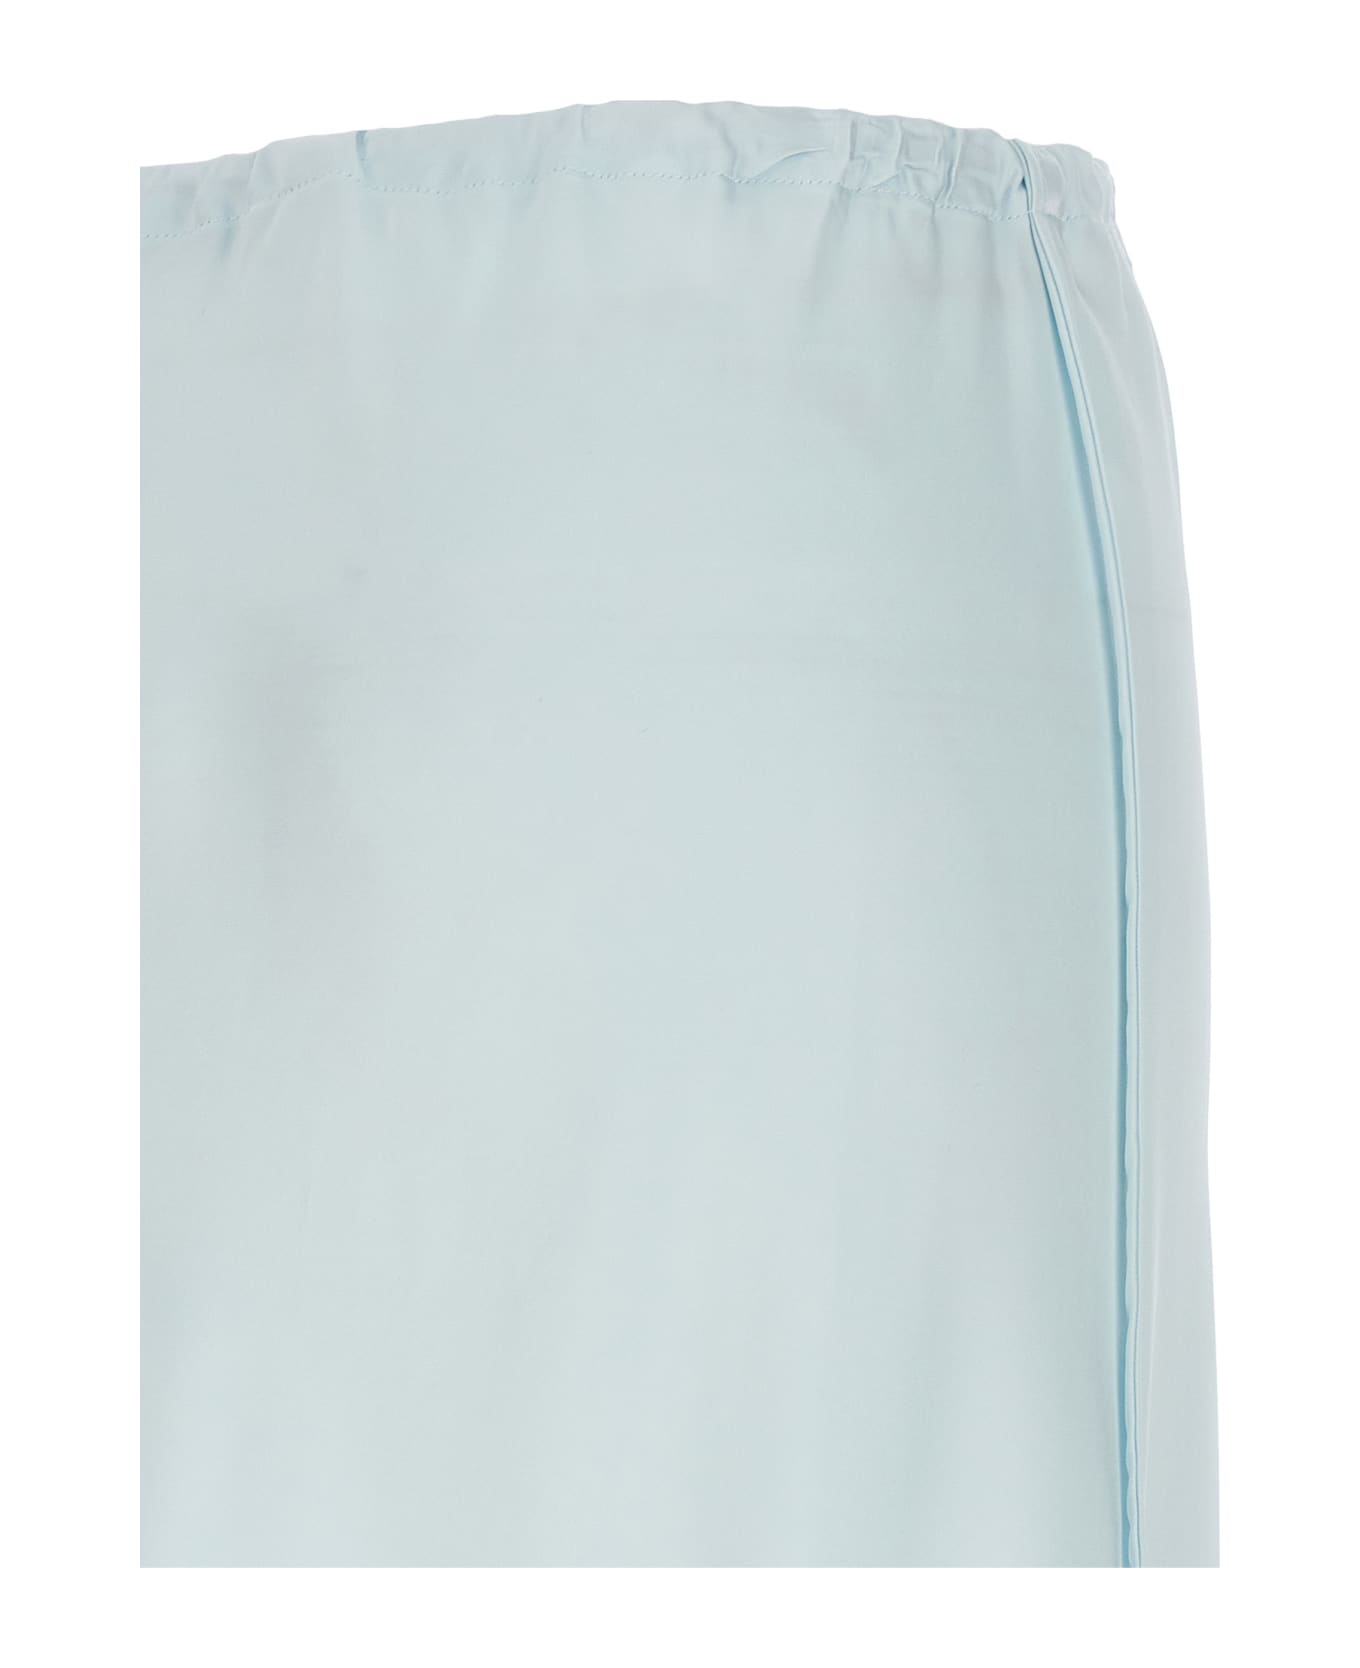 Jil Sander '61' Skirt - Light Blue